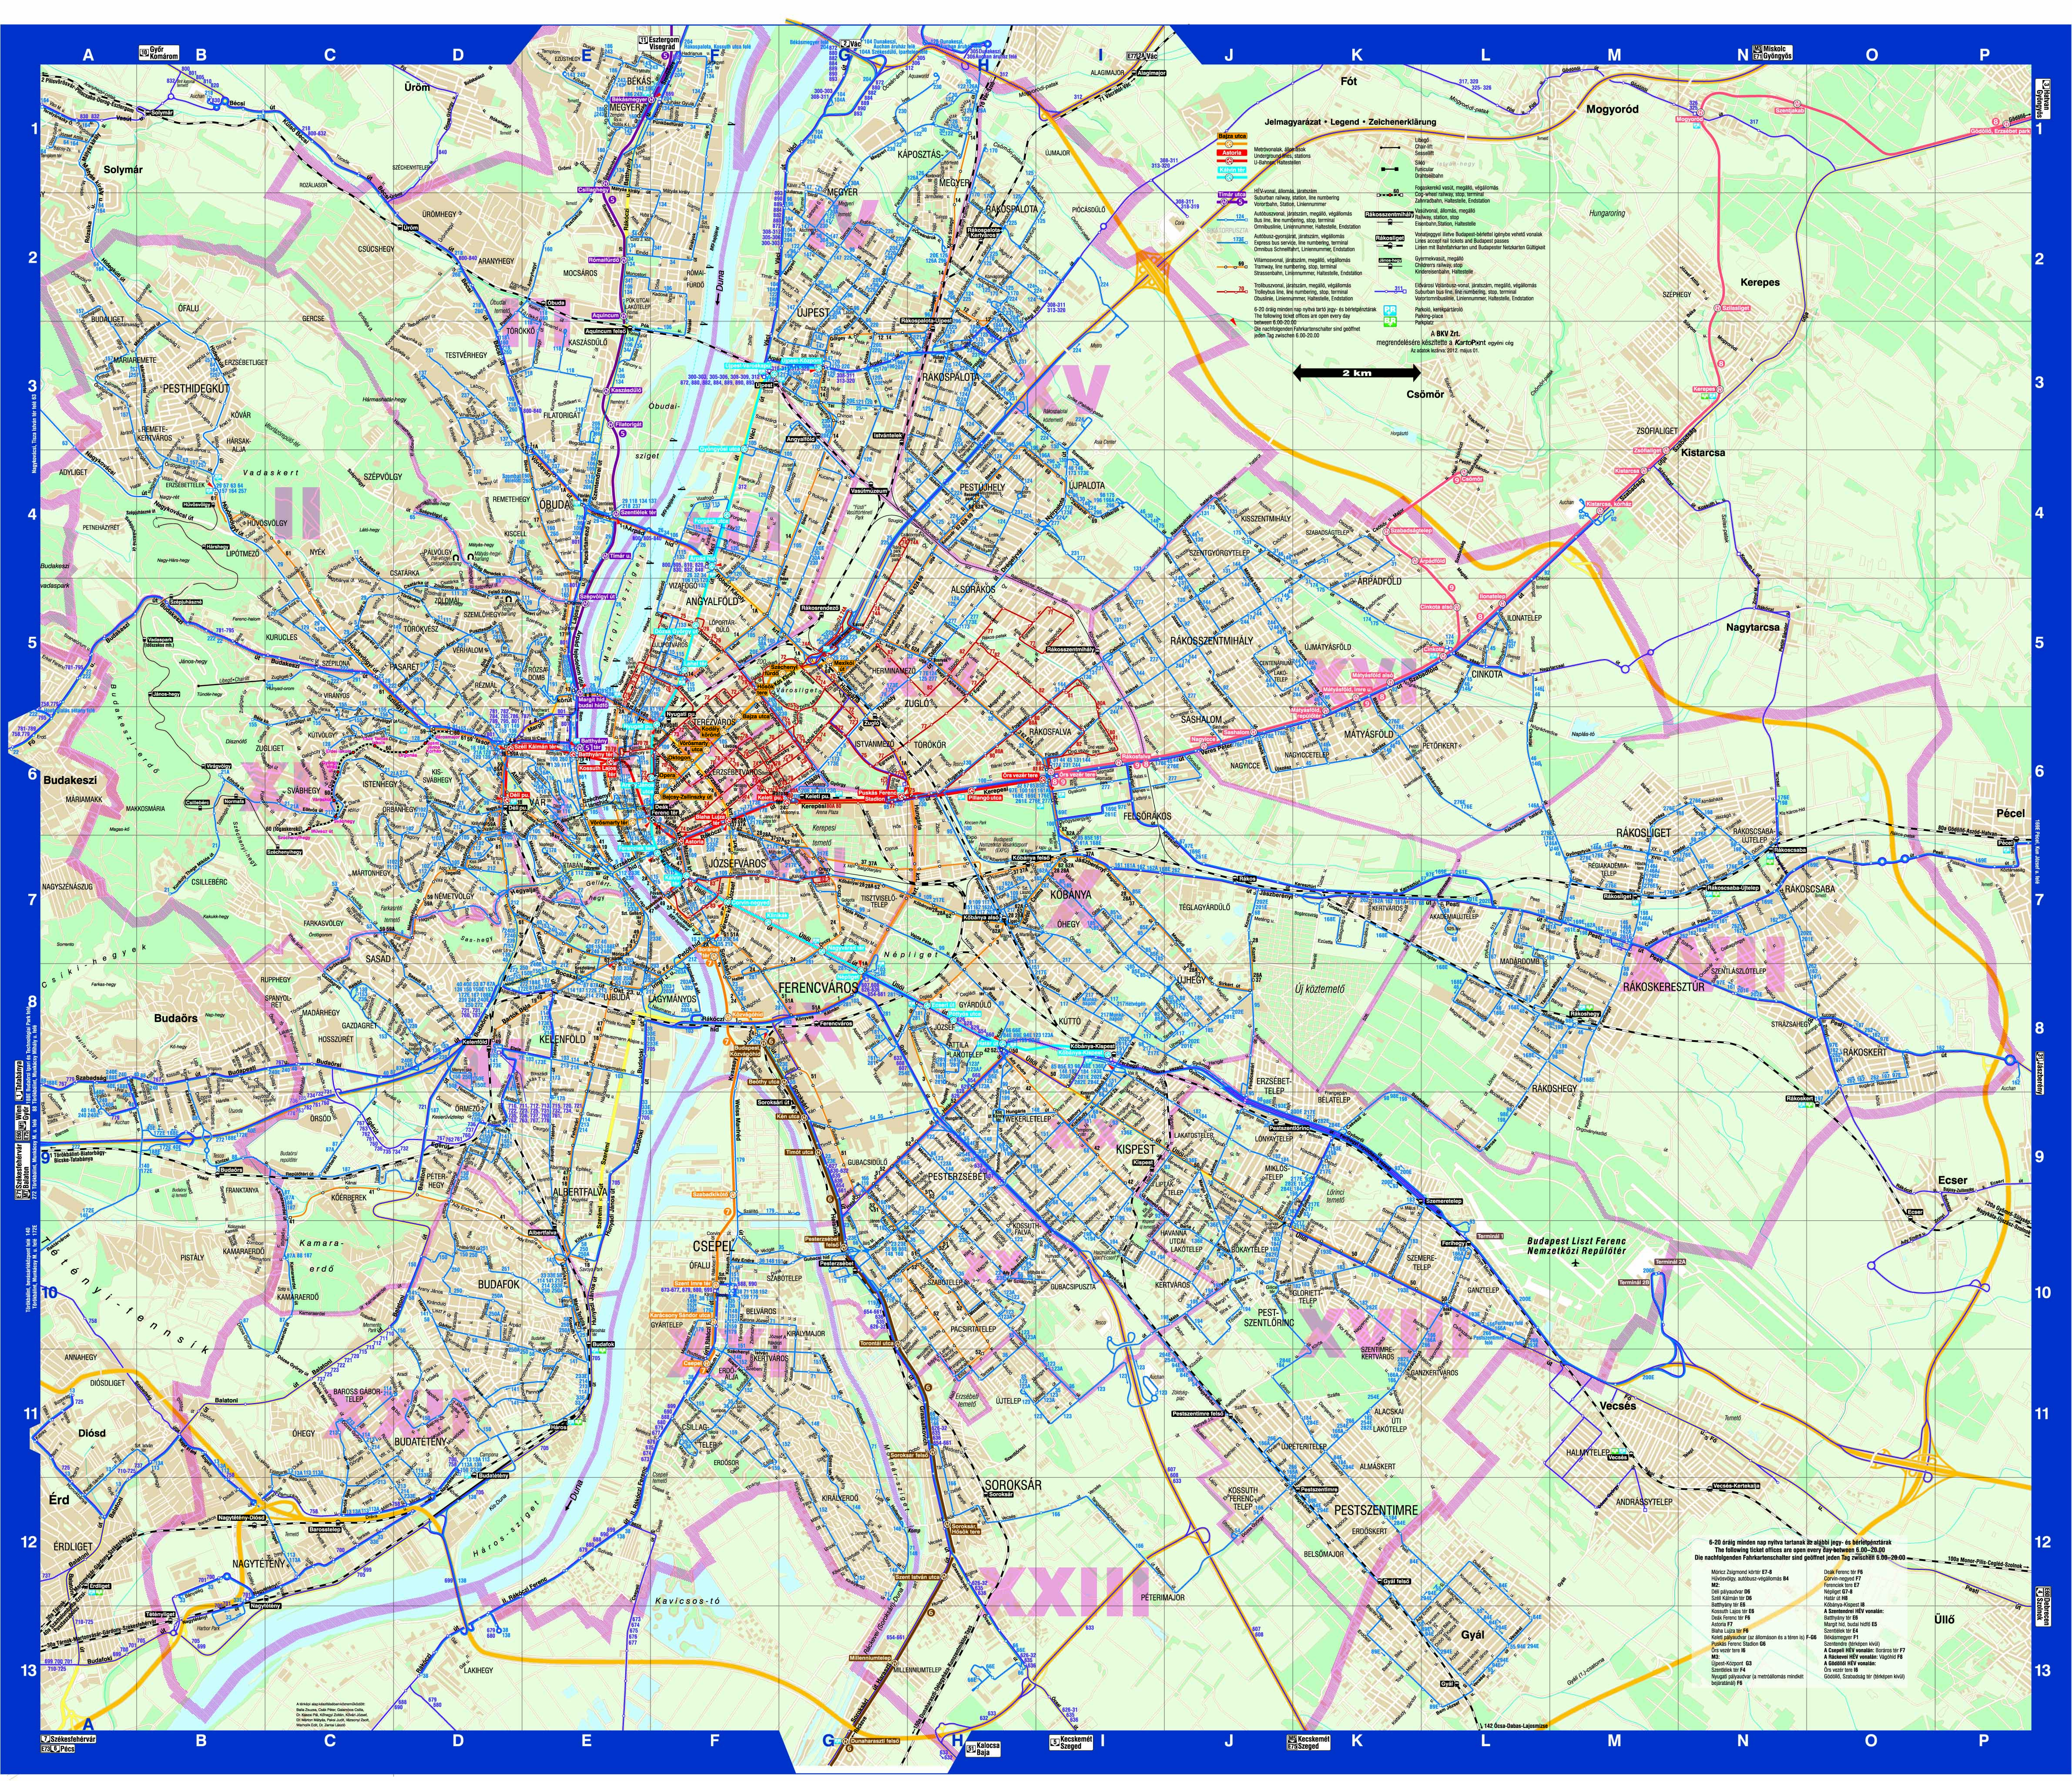 budapest közlekedése térkép Budapest közösségi közlekekedésének utasterheltsége budapest közlekedése térkép